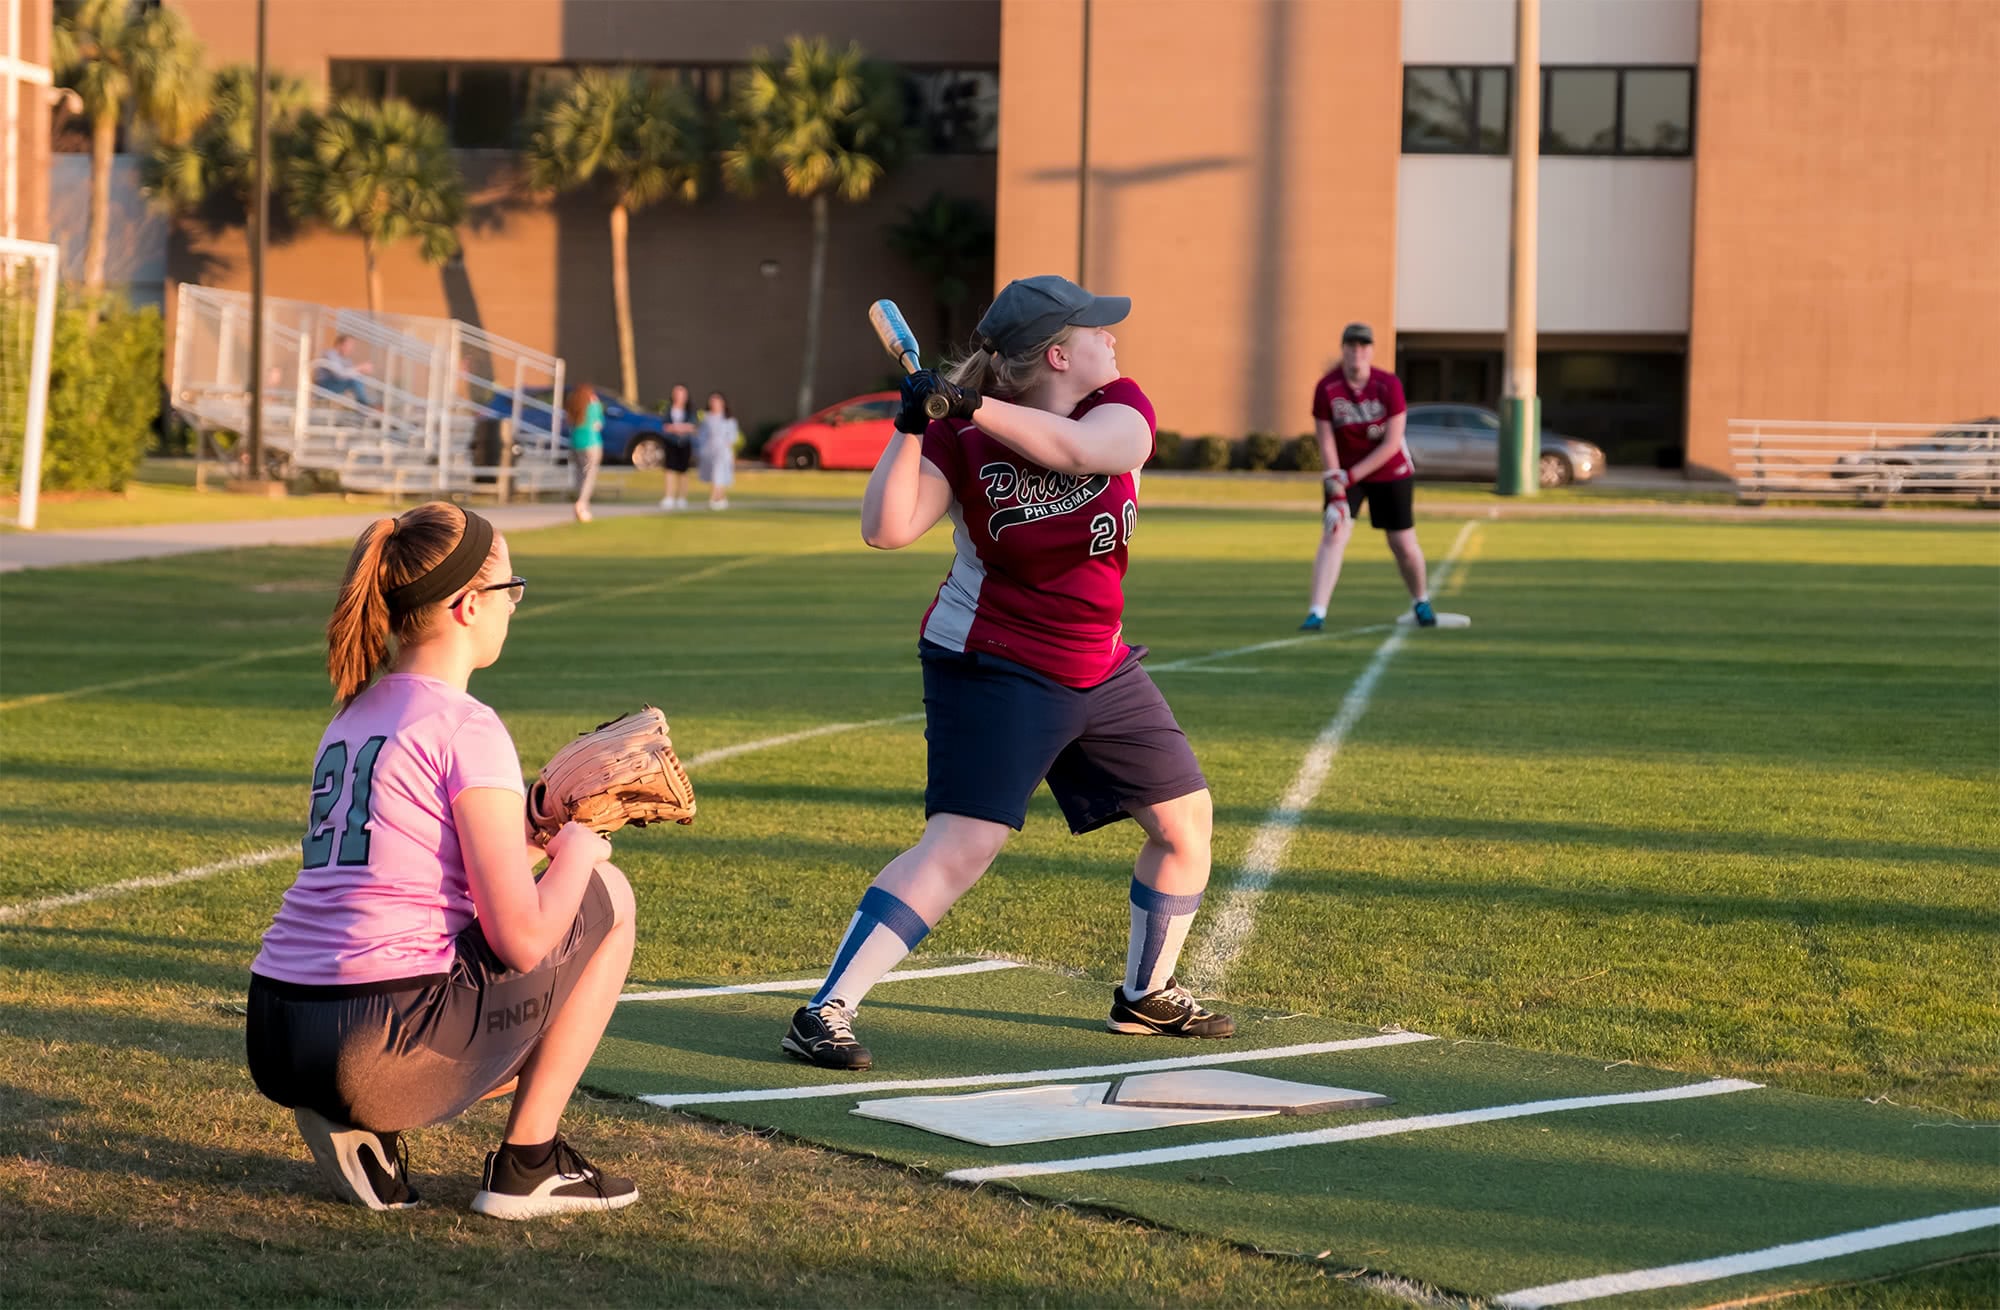 Women's collegian softball player aiming to swing the bat. 